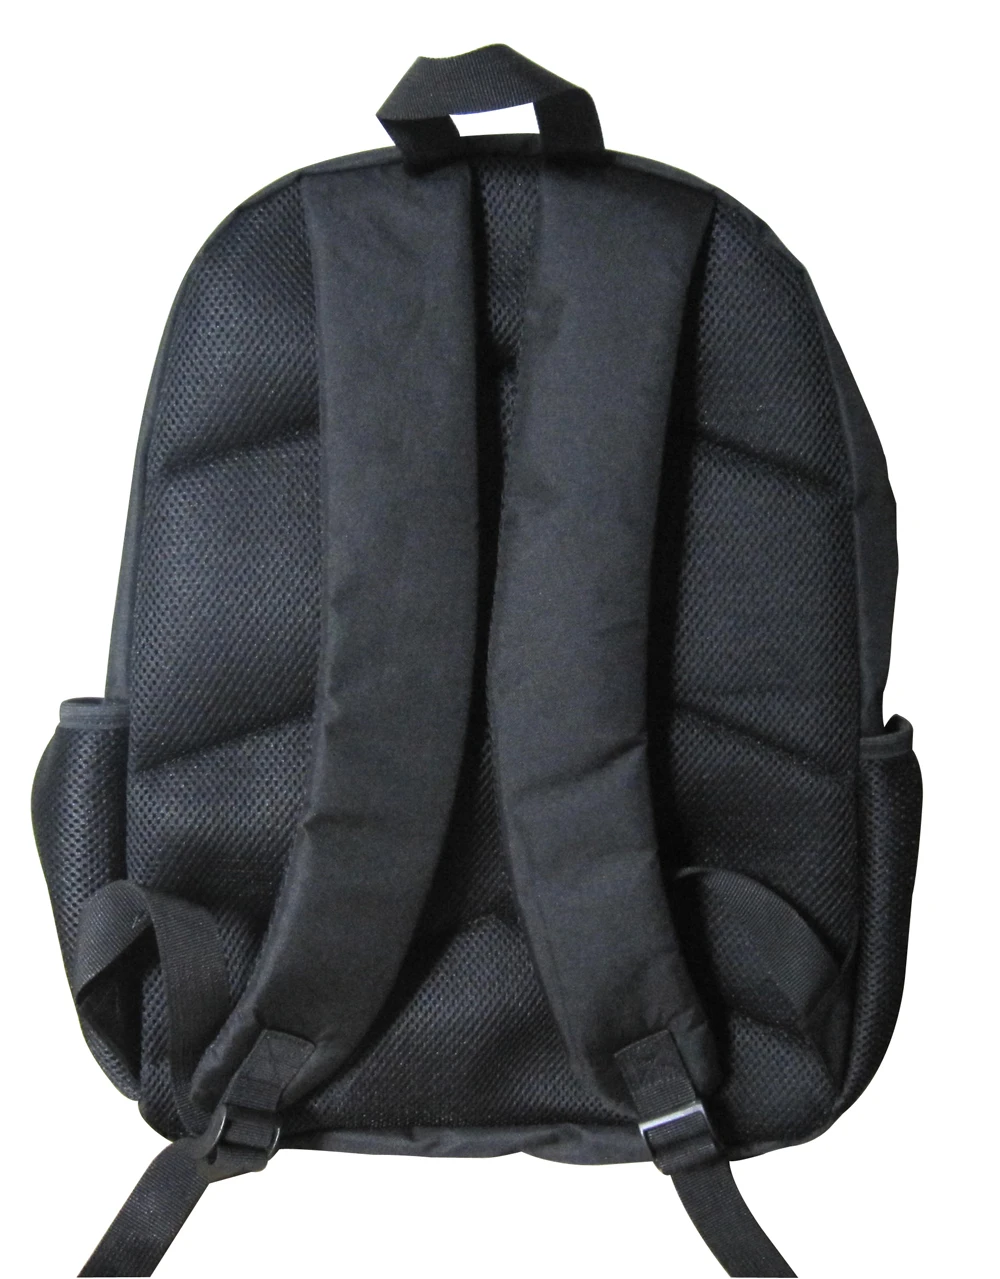 16-дюймовый Mochila рюкзак Violetta, дизайнерский детский школьный рюкзак с рисунком детские школьные сумки для девочек подростков